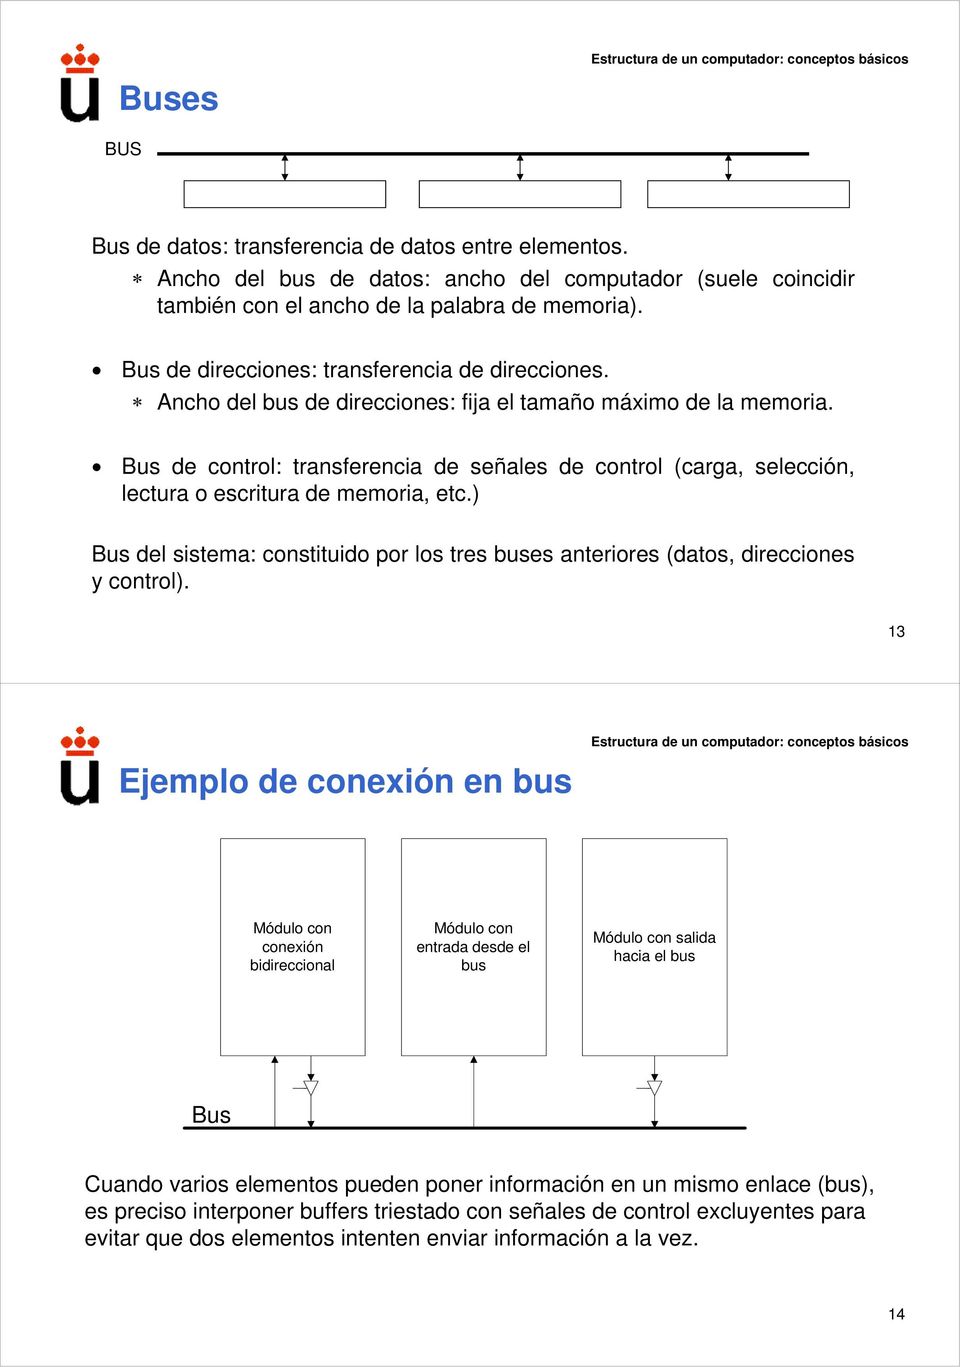 Bus de control: transferencia de señales de control (carga, selección, lectura o escritura de memoria, etc.) Bus del sistema: constituido por los tres buses anteriores (datos, direcciones y control).